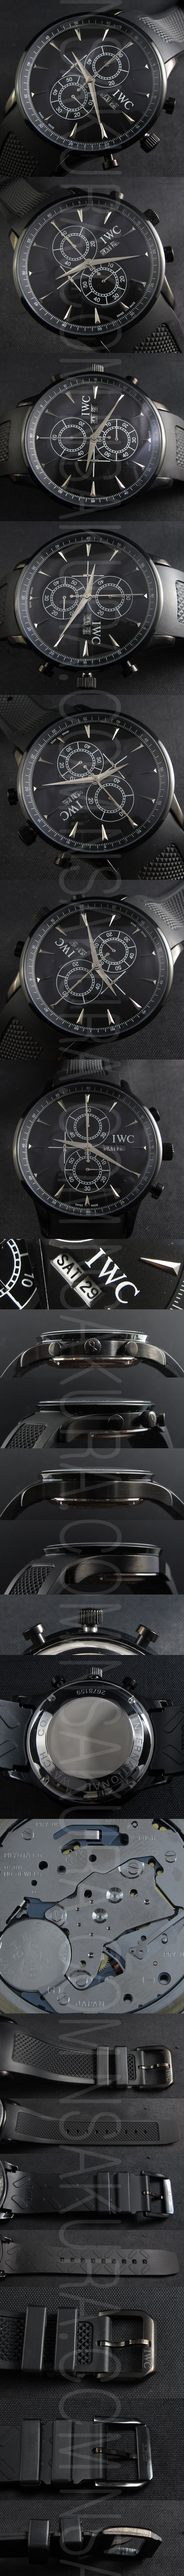 新着腕時計IWC ポルトギーゼ(ストップウォッチ機能付き)